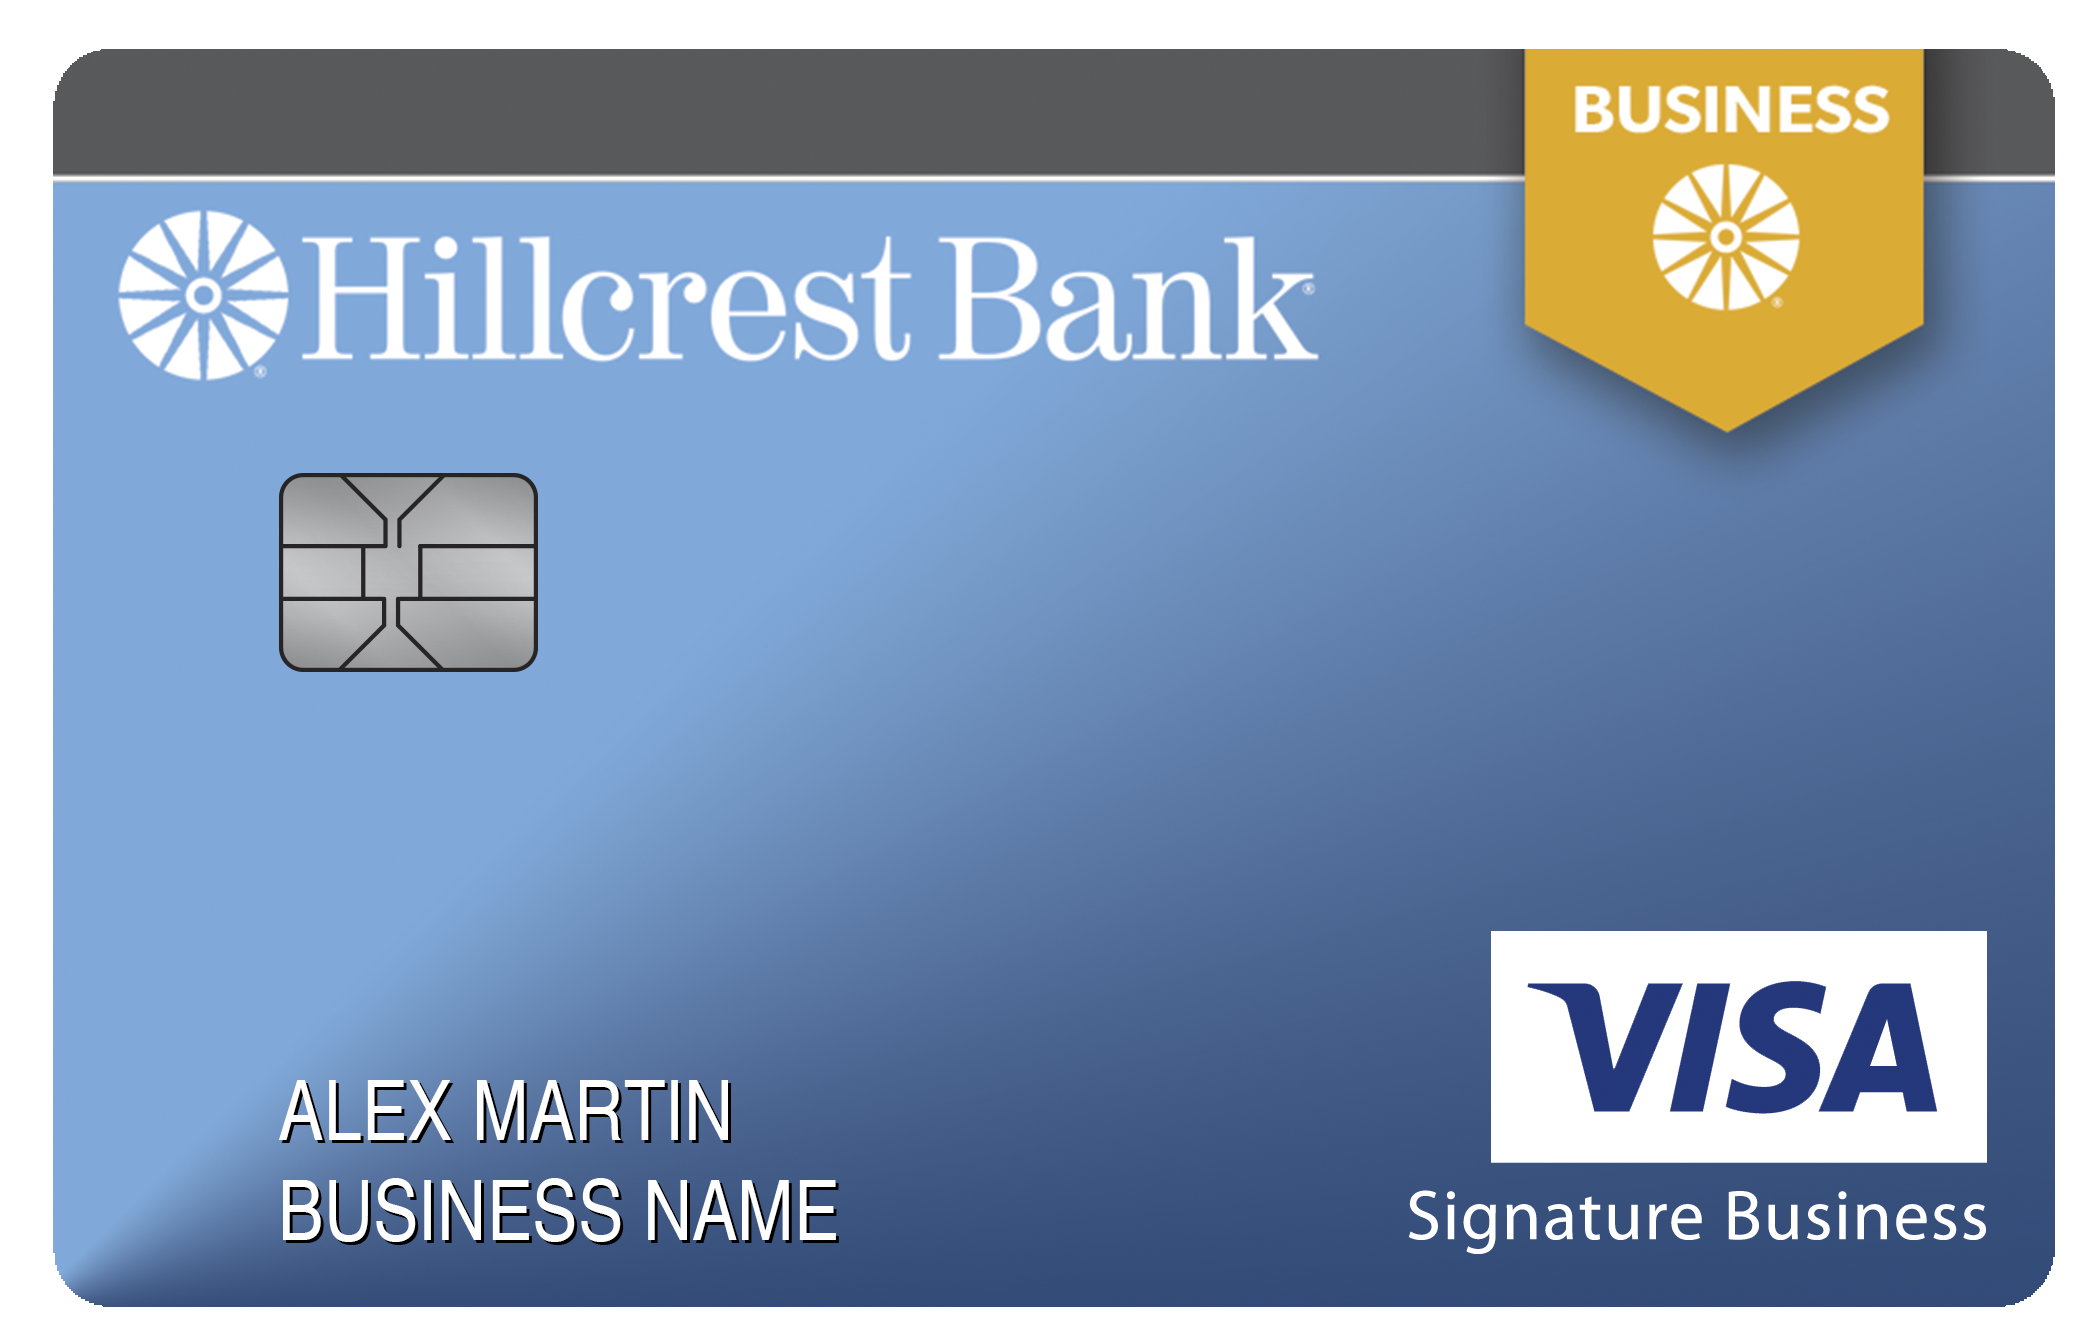 Hillcrest Bank Smart Business Rewards Card